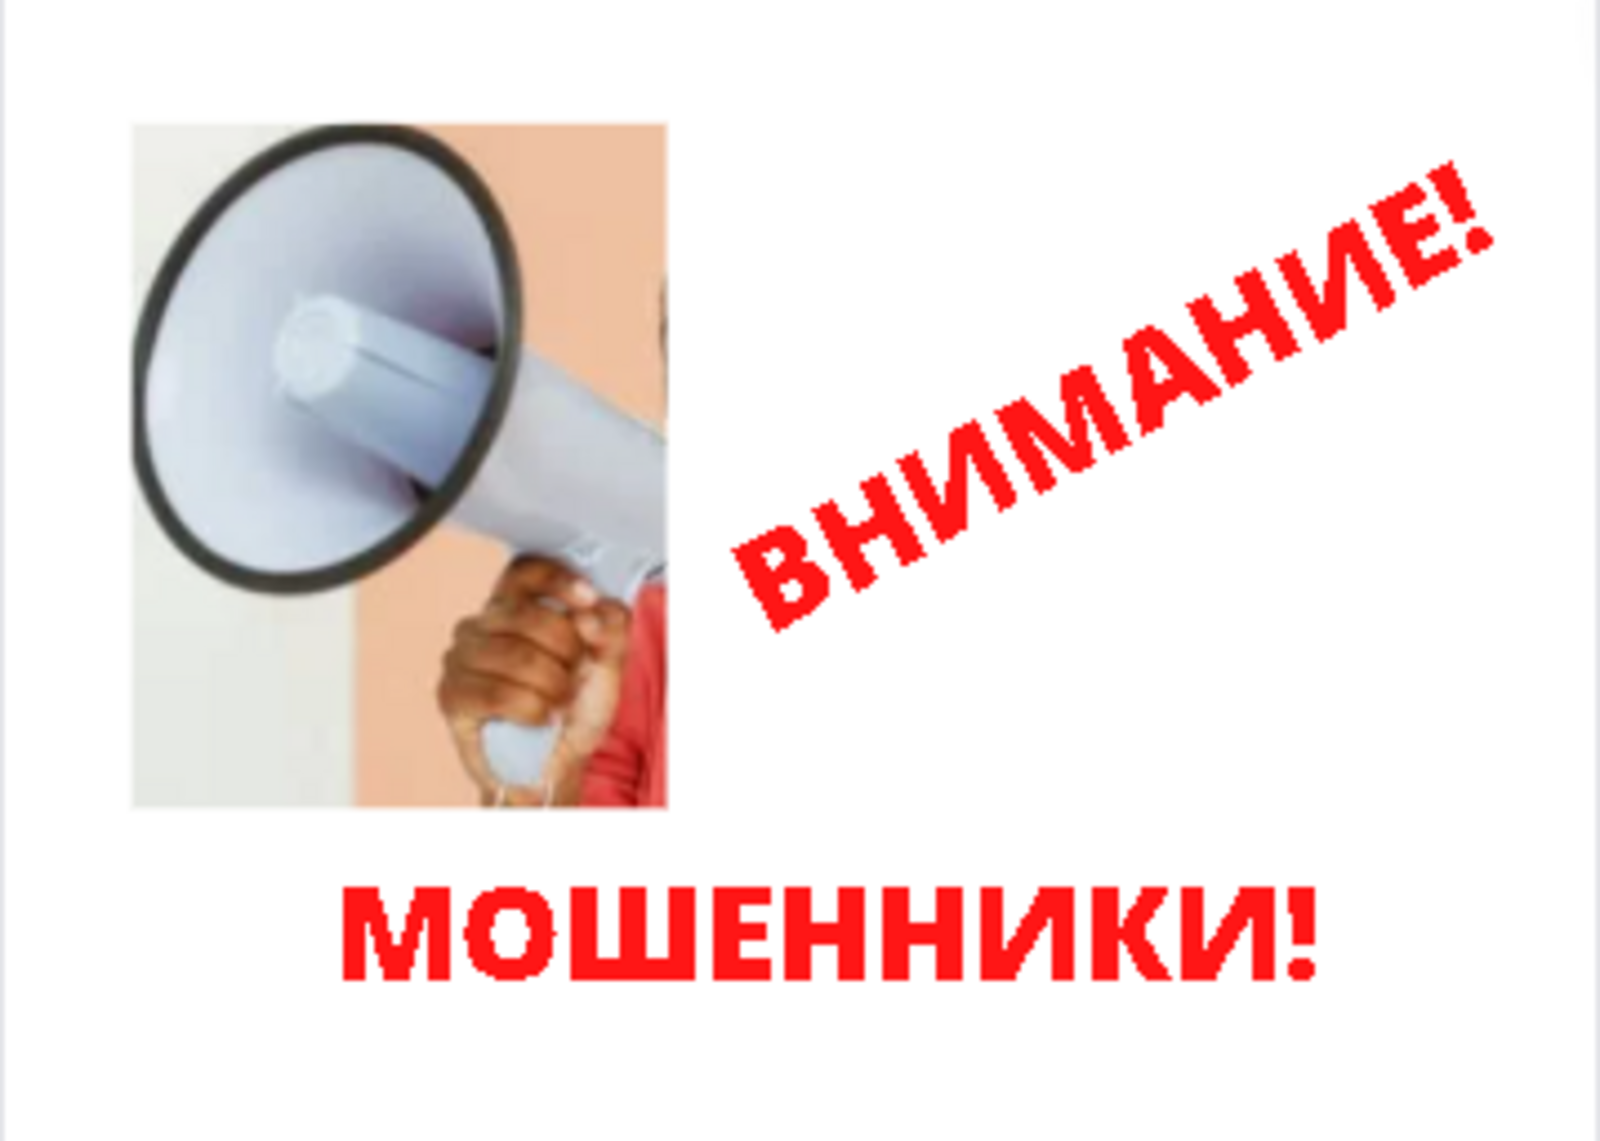 Внимание! В Башкортостане работает новая схема телефонного мошенничества